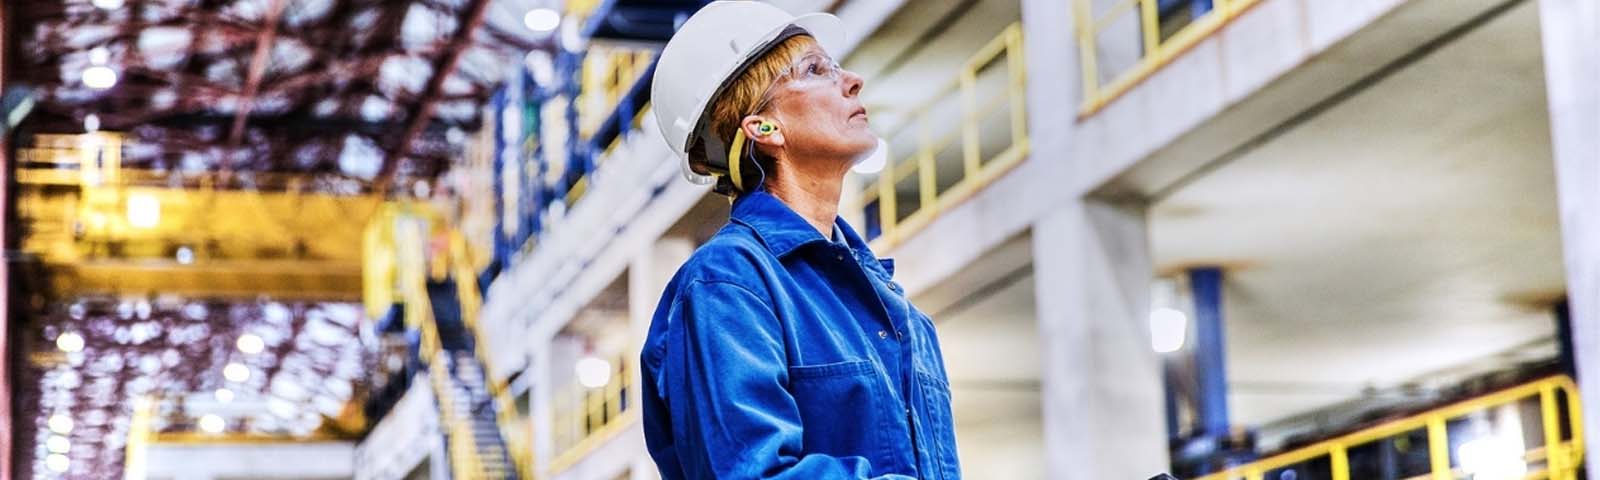 Een fabrieksmedewerker kijkt omhoog naar de fabriek